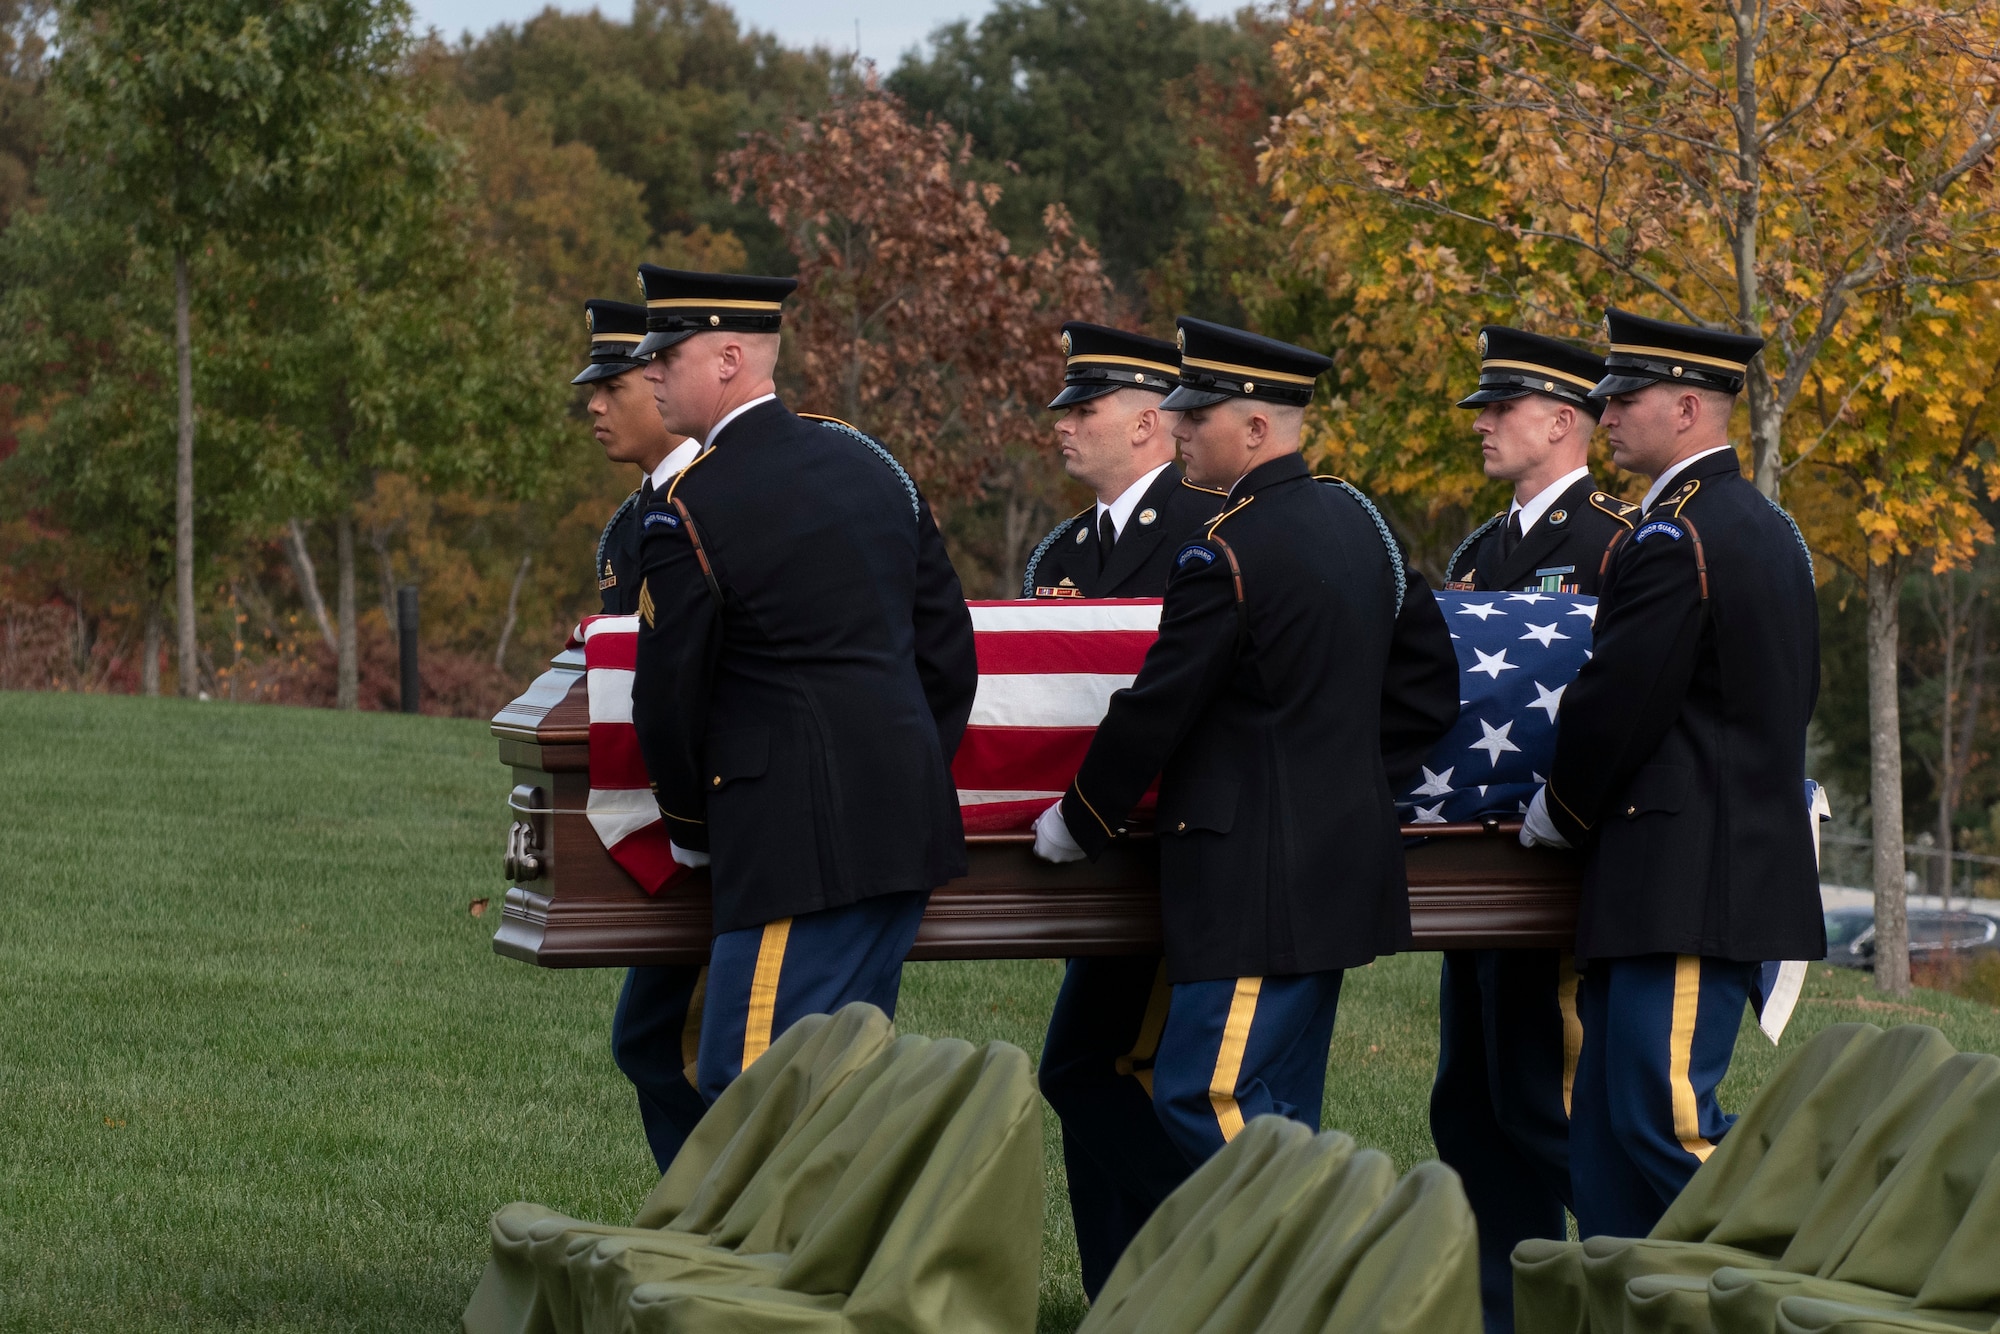 Honor guardsmen carry a casket.